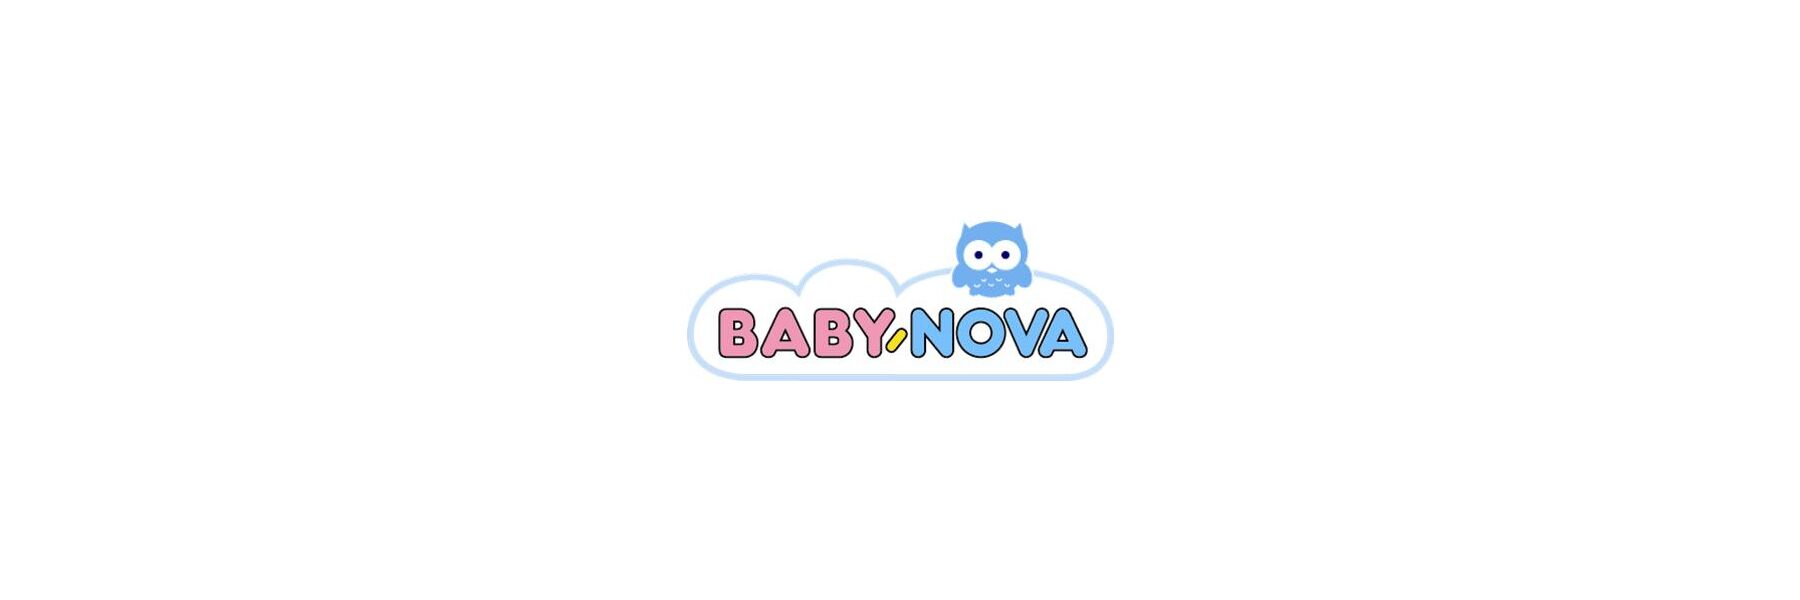 Baby-Nova gehört zu dem Familienunternehmen...